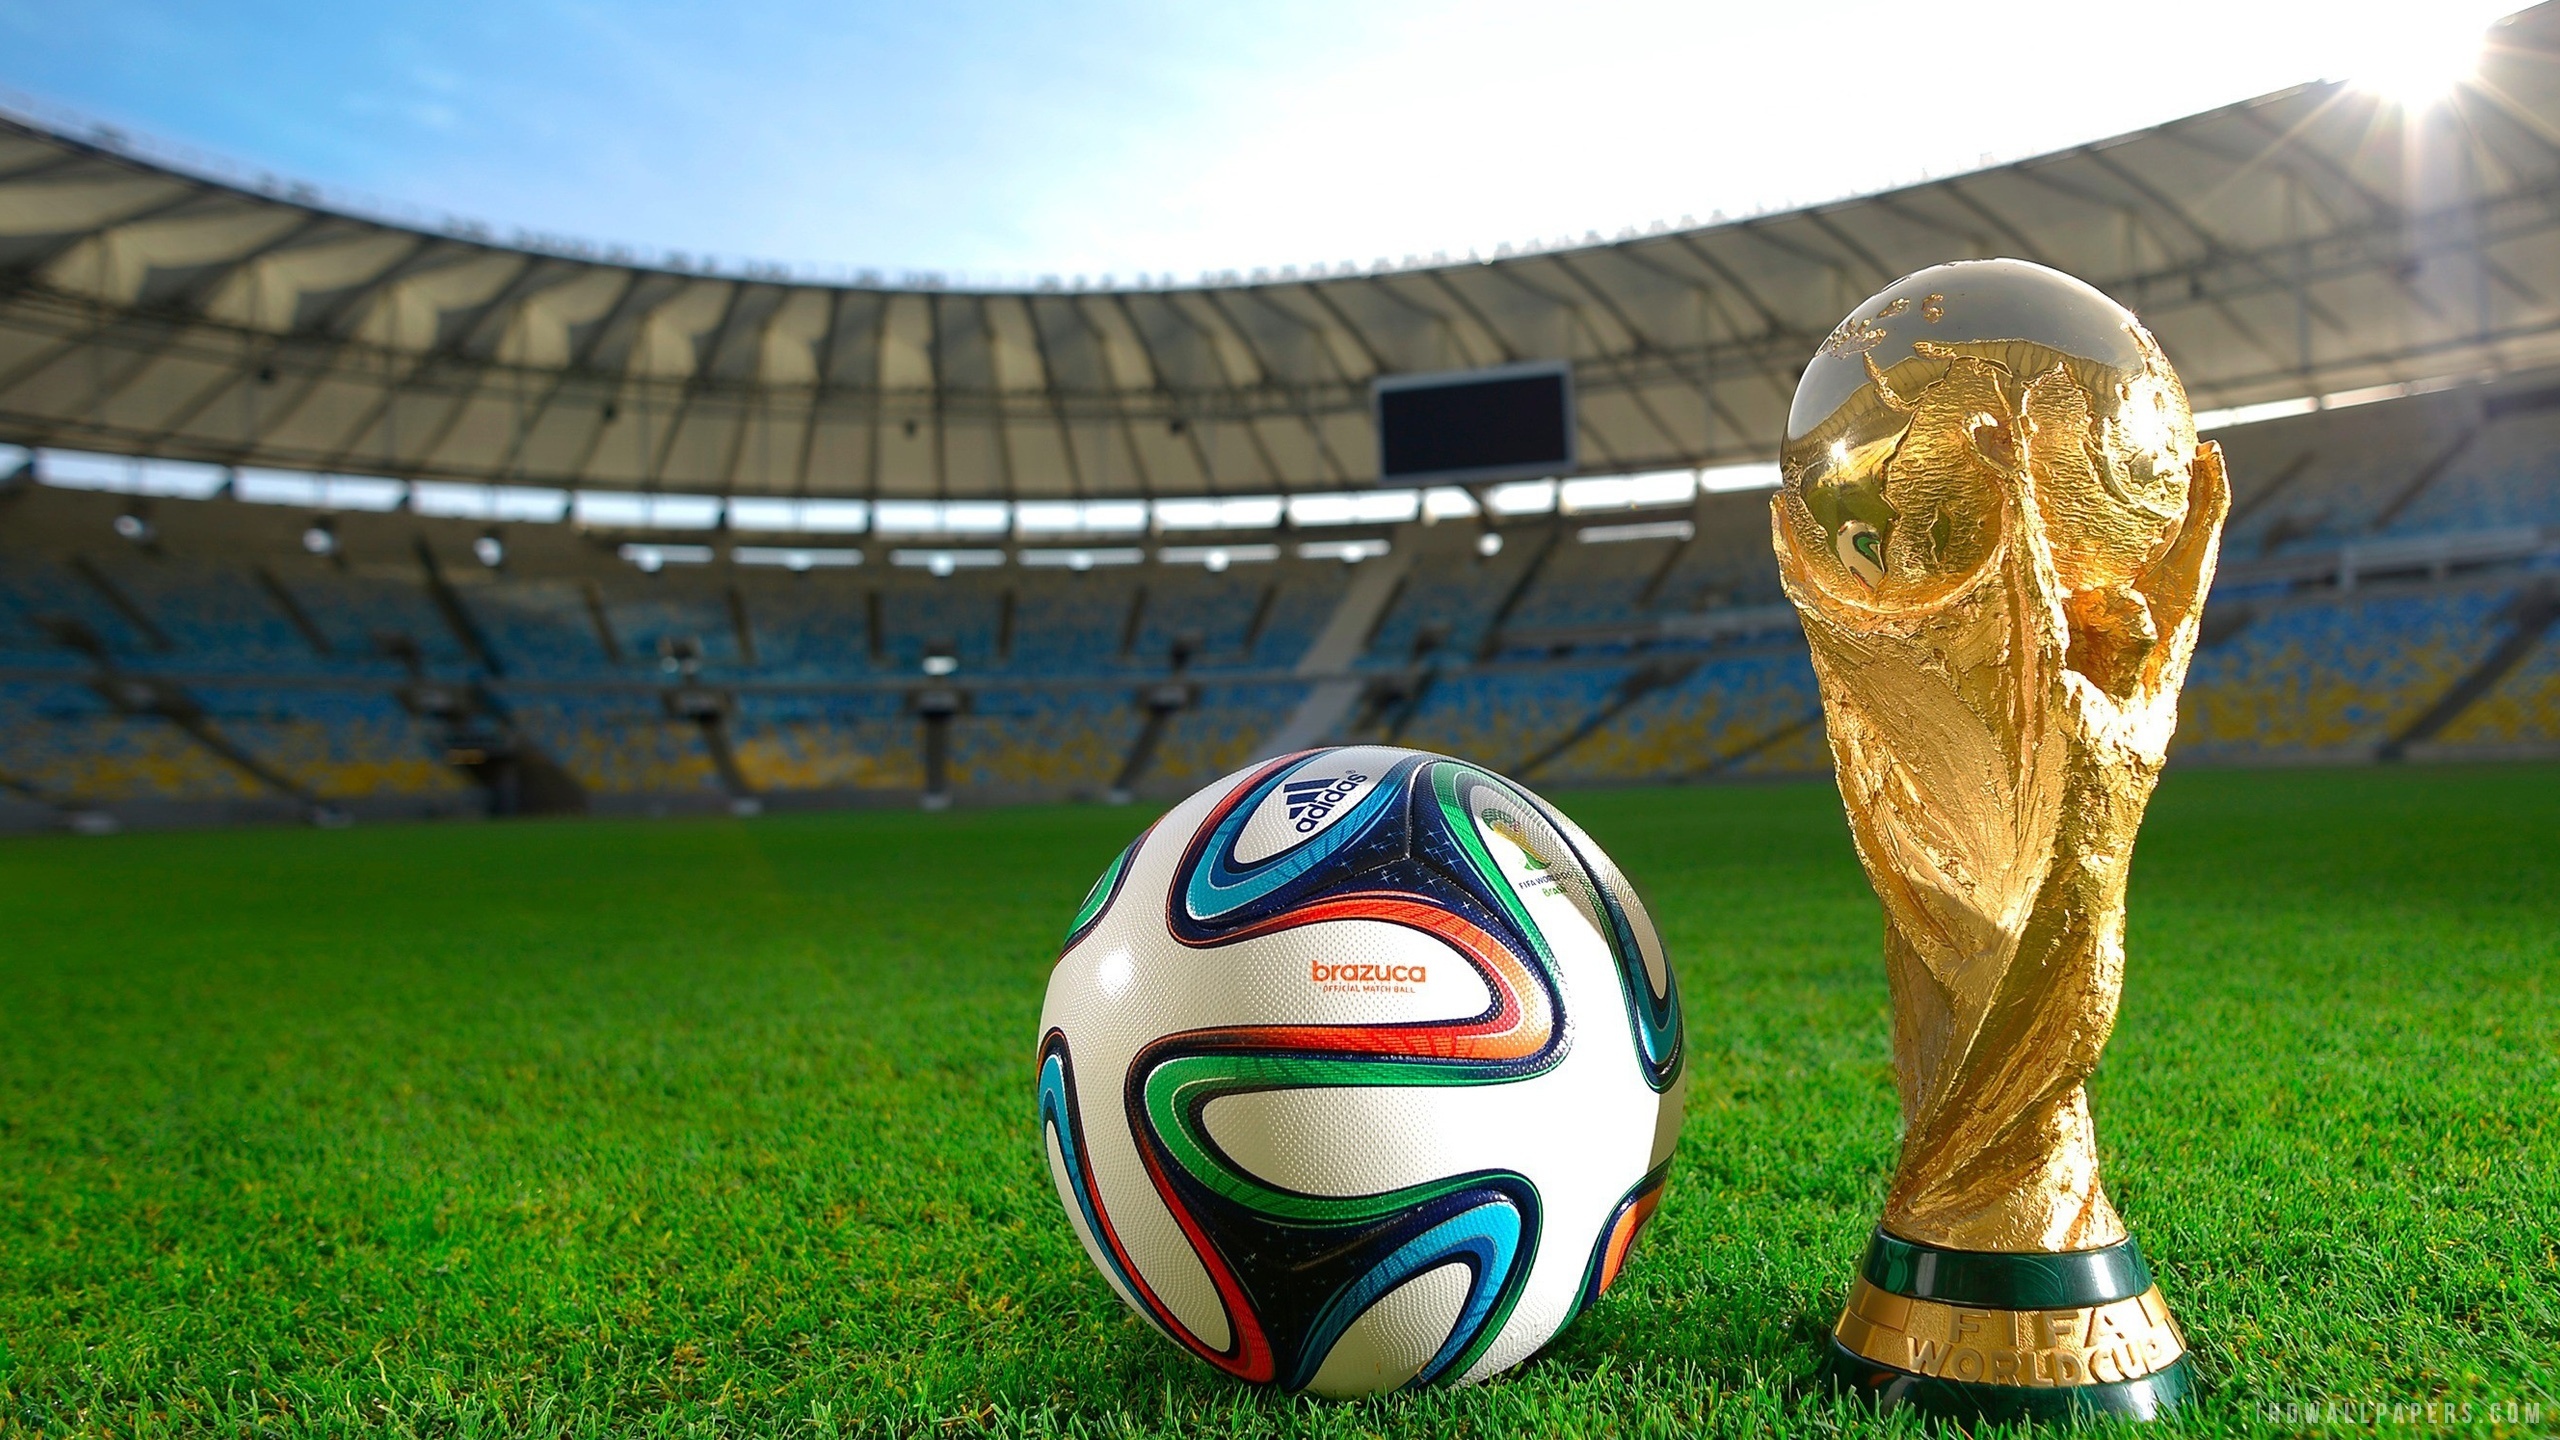 国际足联世界杯2014巴西壁纸1920x1080分辨率查看